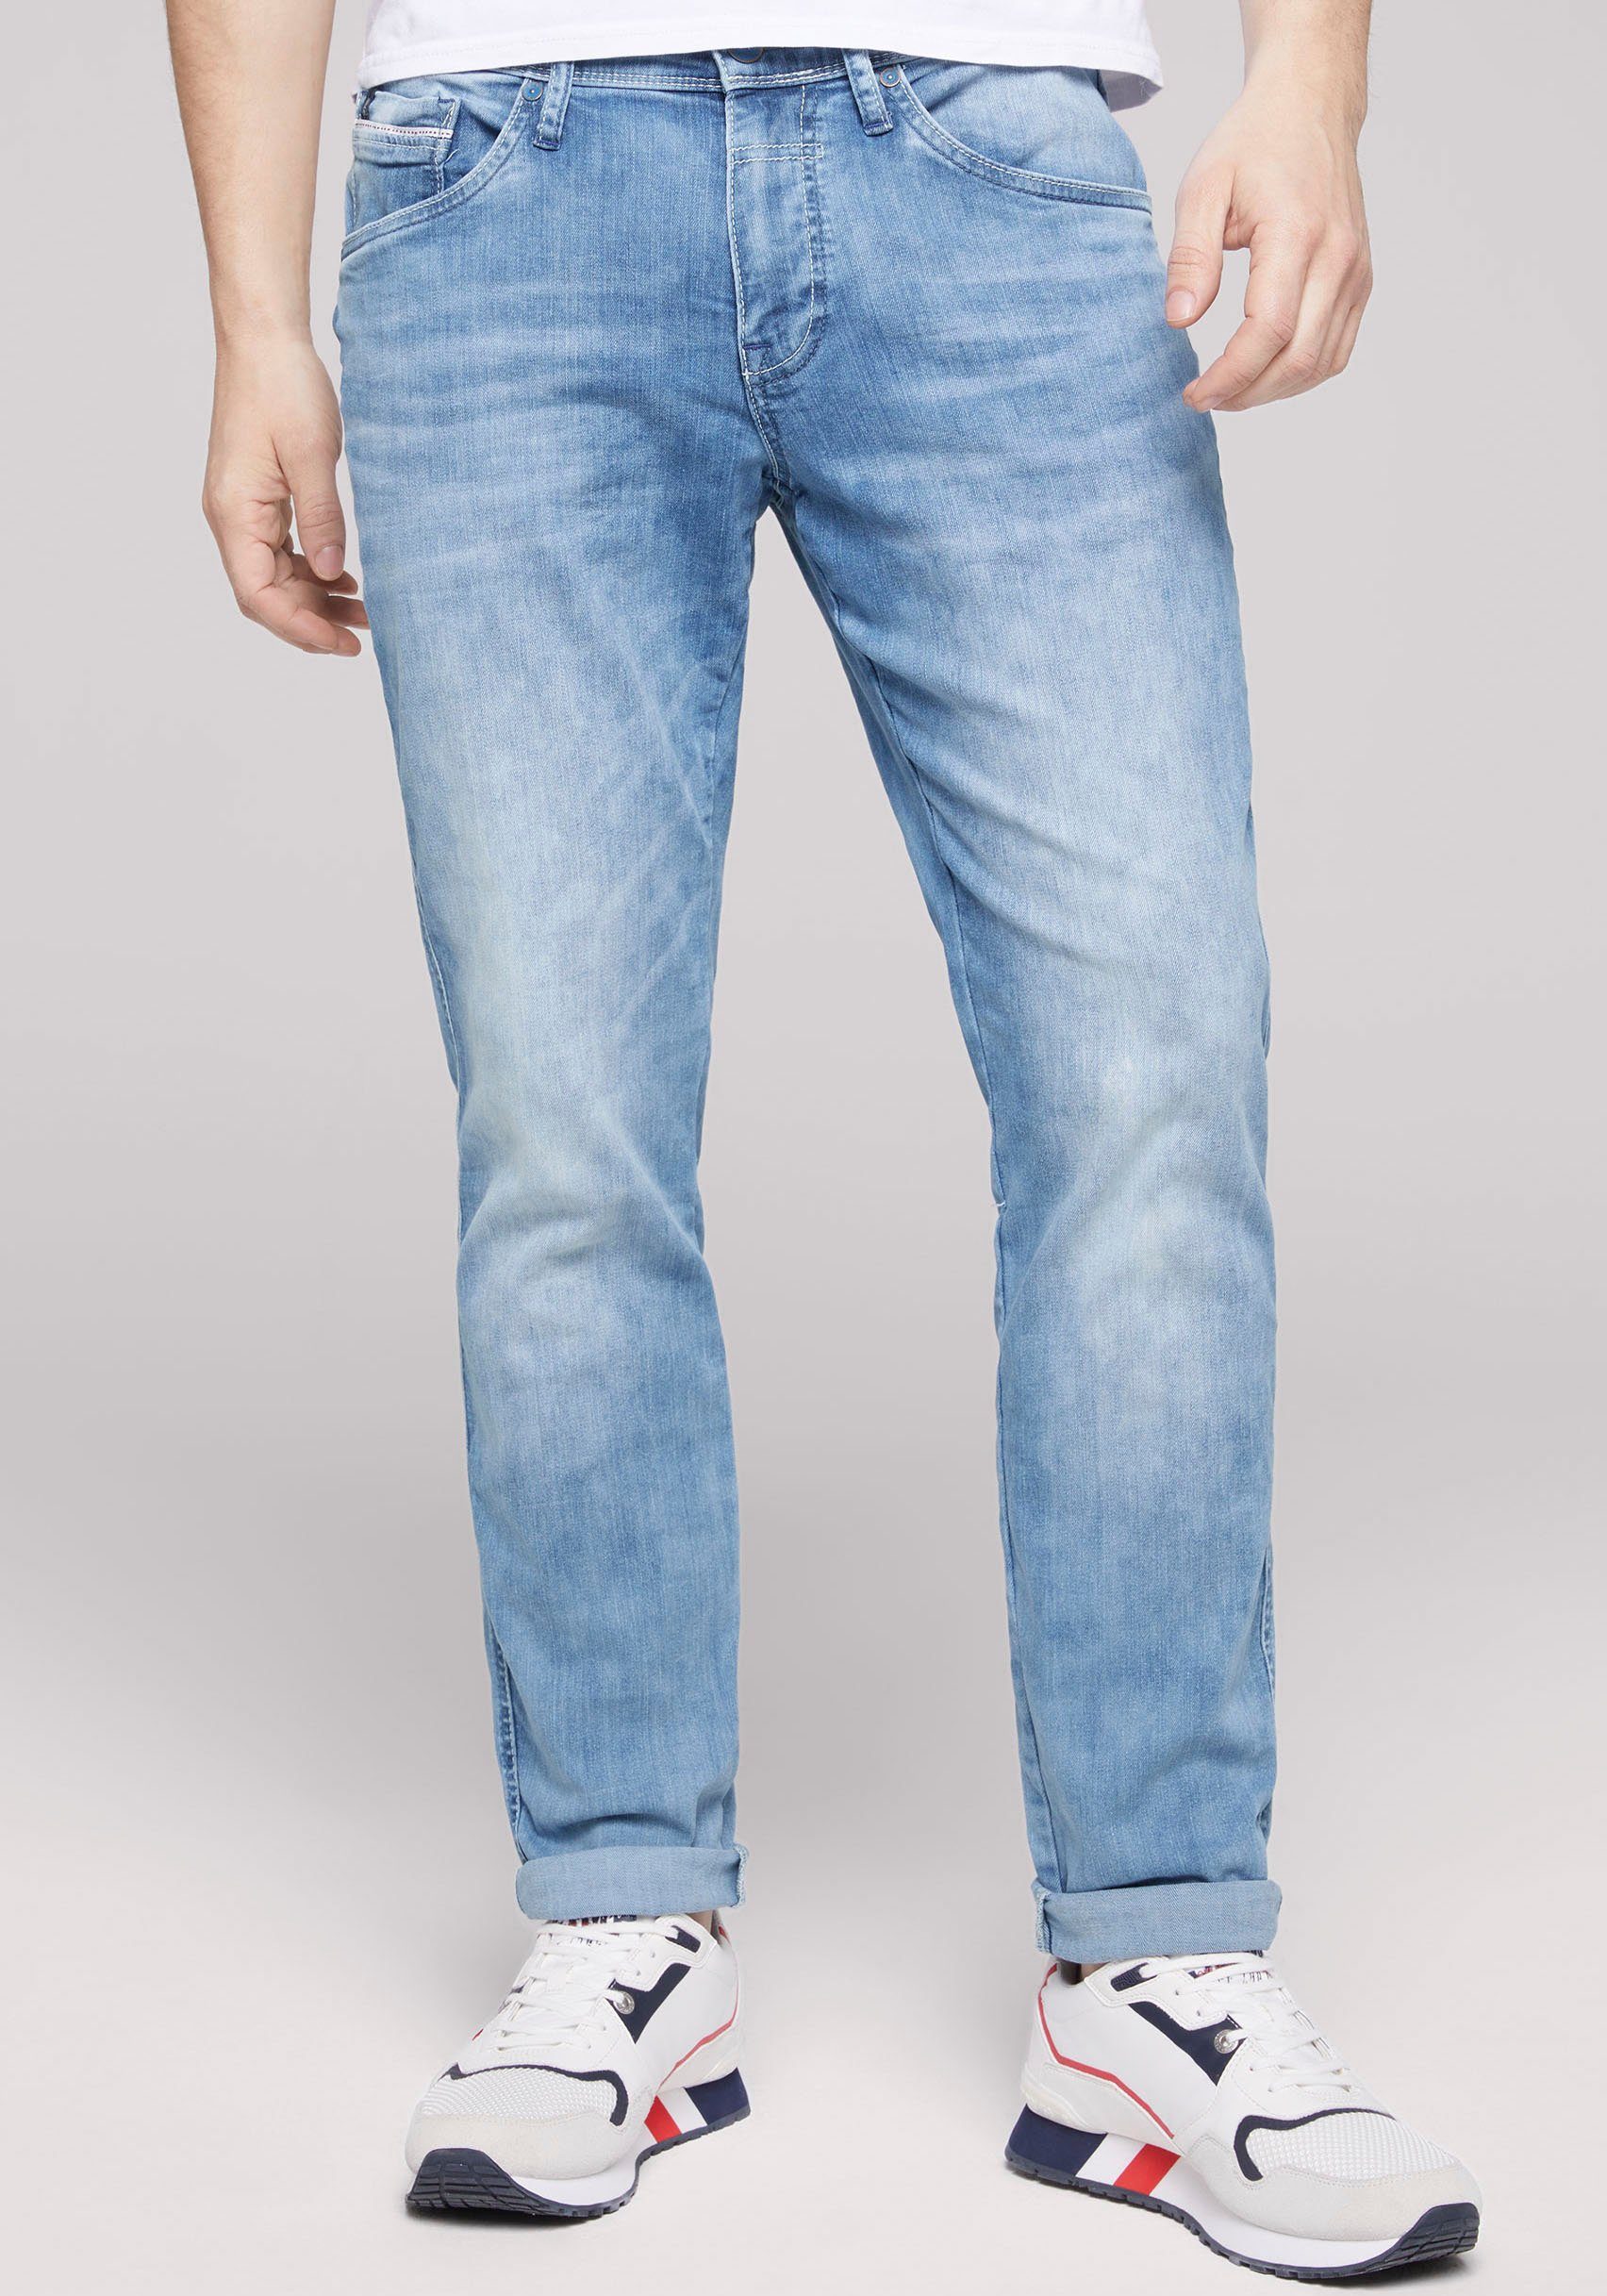 CAMP DAVID 5-Pocket-Jeans mit dünnen Nähten blau